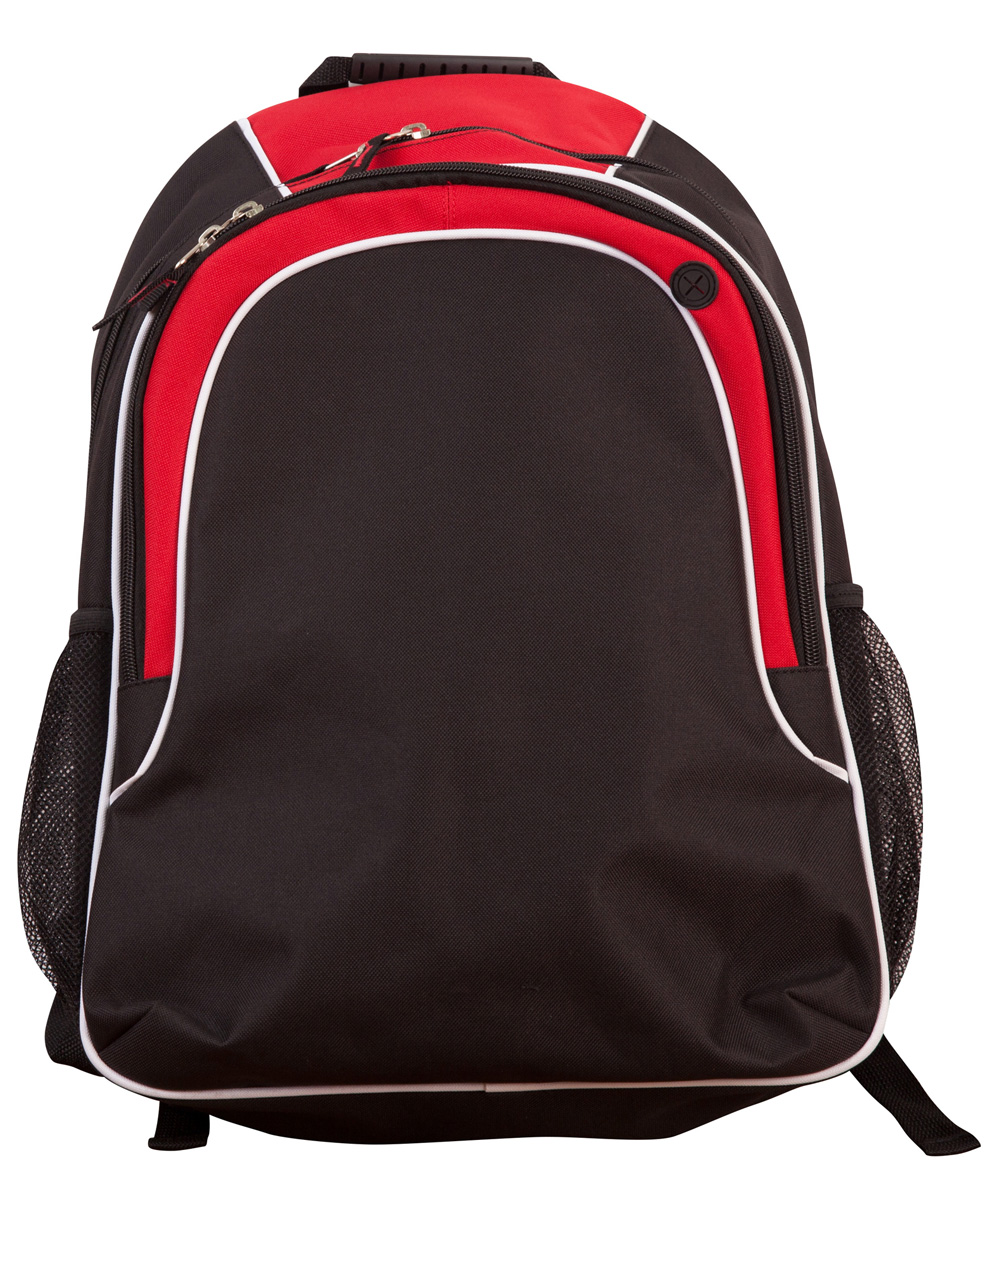 WinningSpirit B5020-Winner Backpack